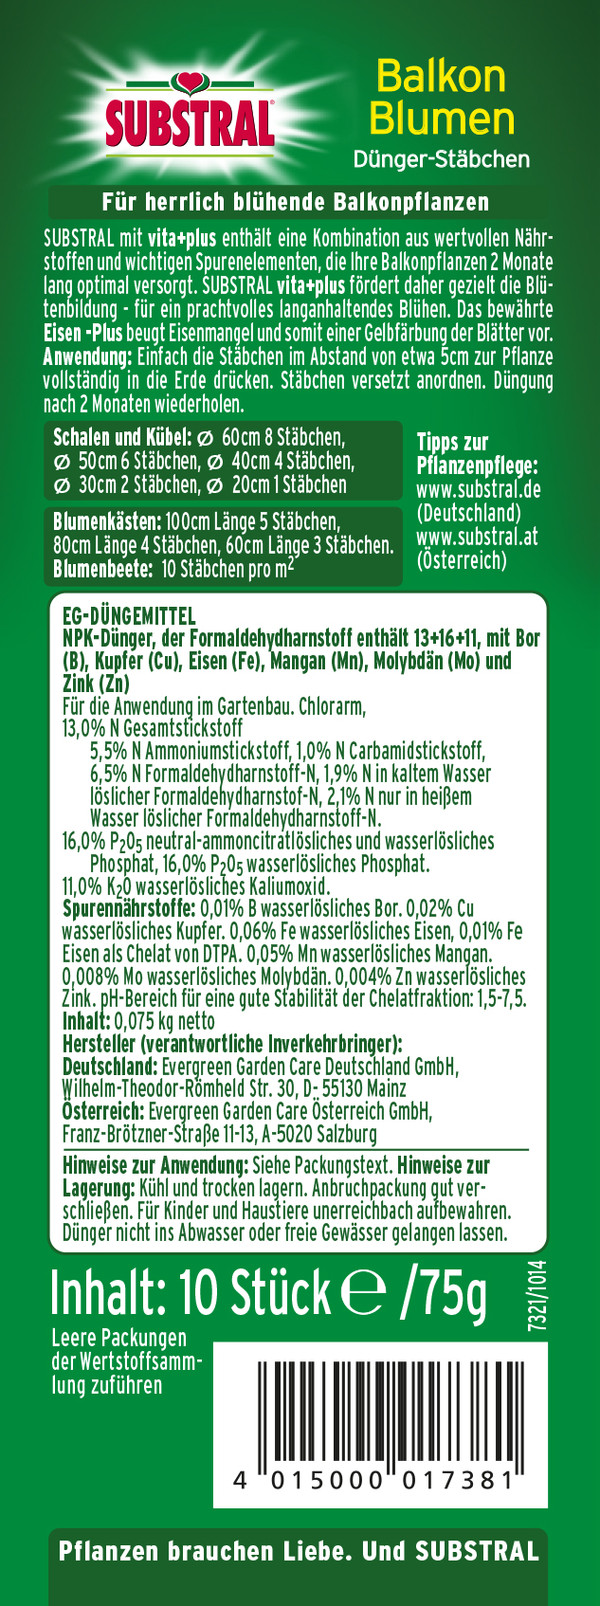 Substral® Düngestäbchen für Balkonblumen, 10 Stk.